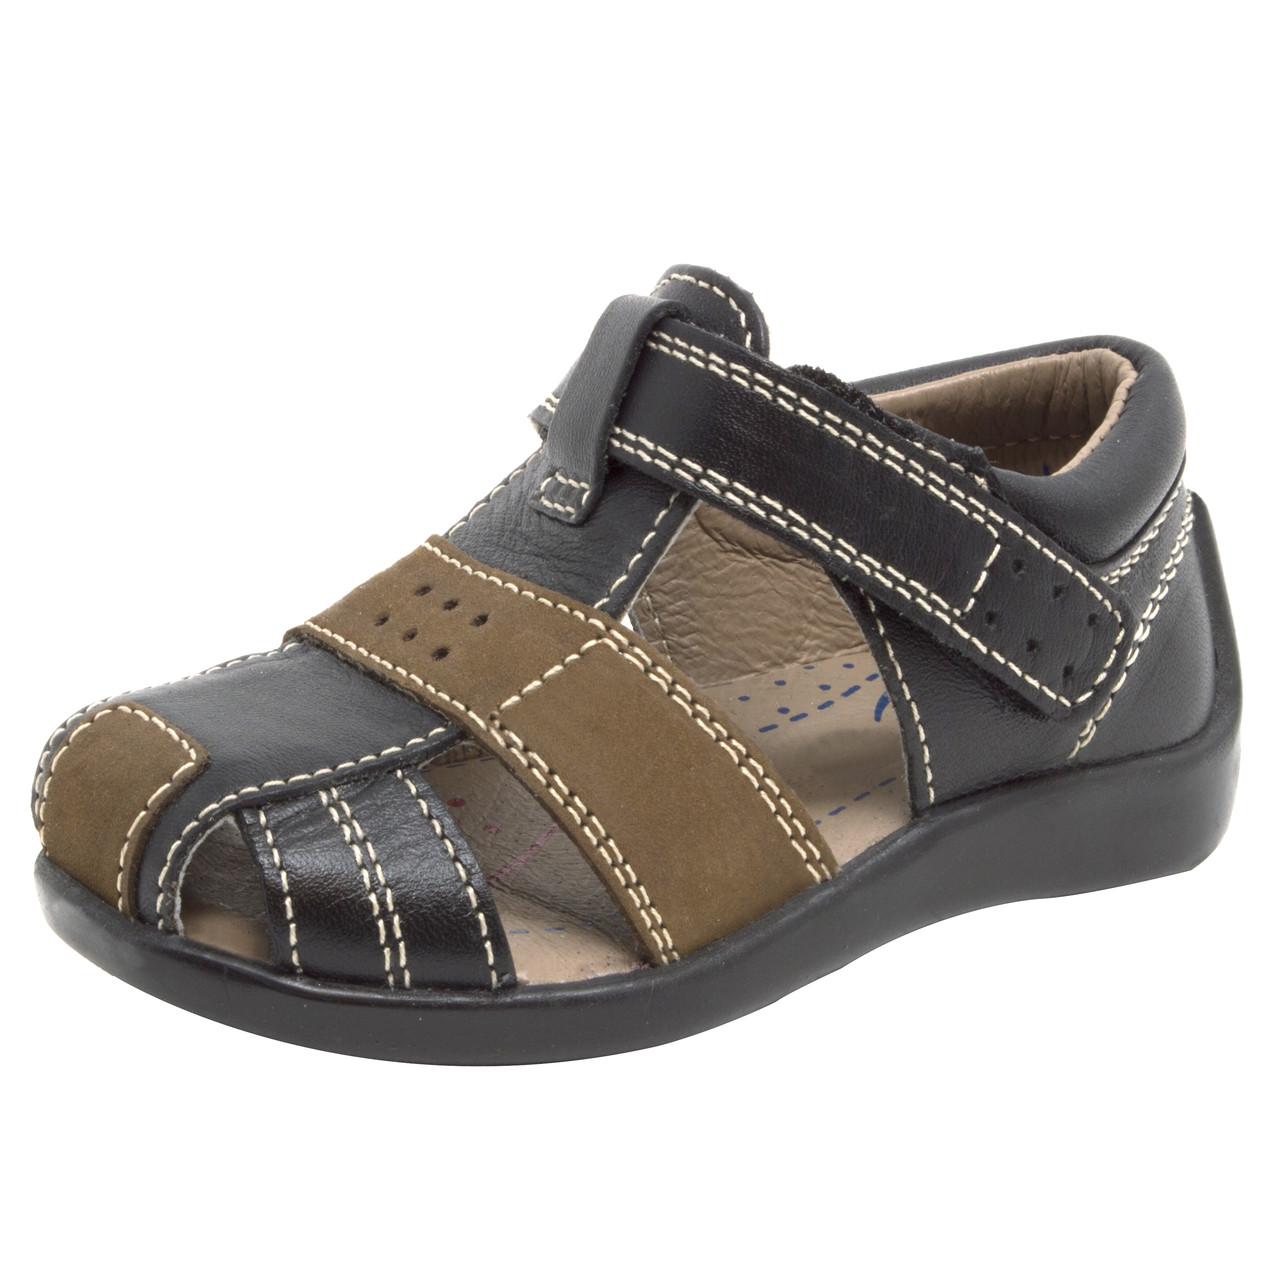 Women's Vegan Leather Flat Sandals | Women's Shoes | Abercrombie.com